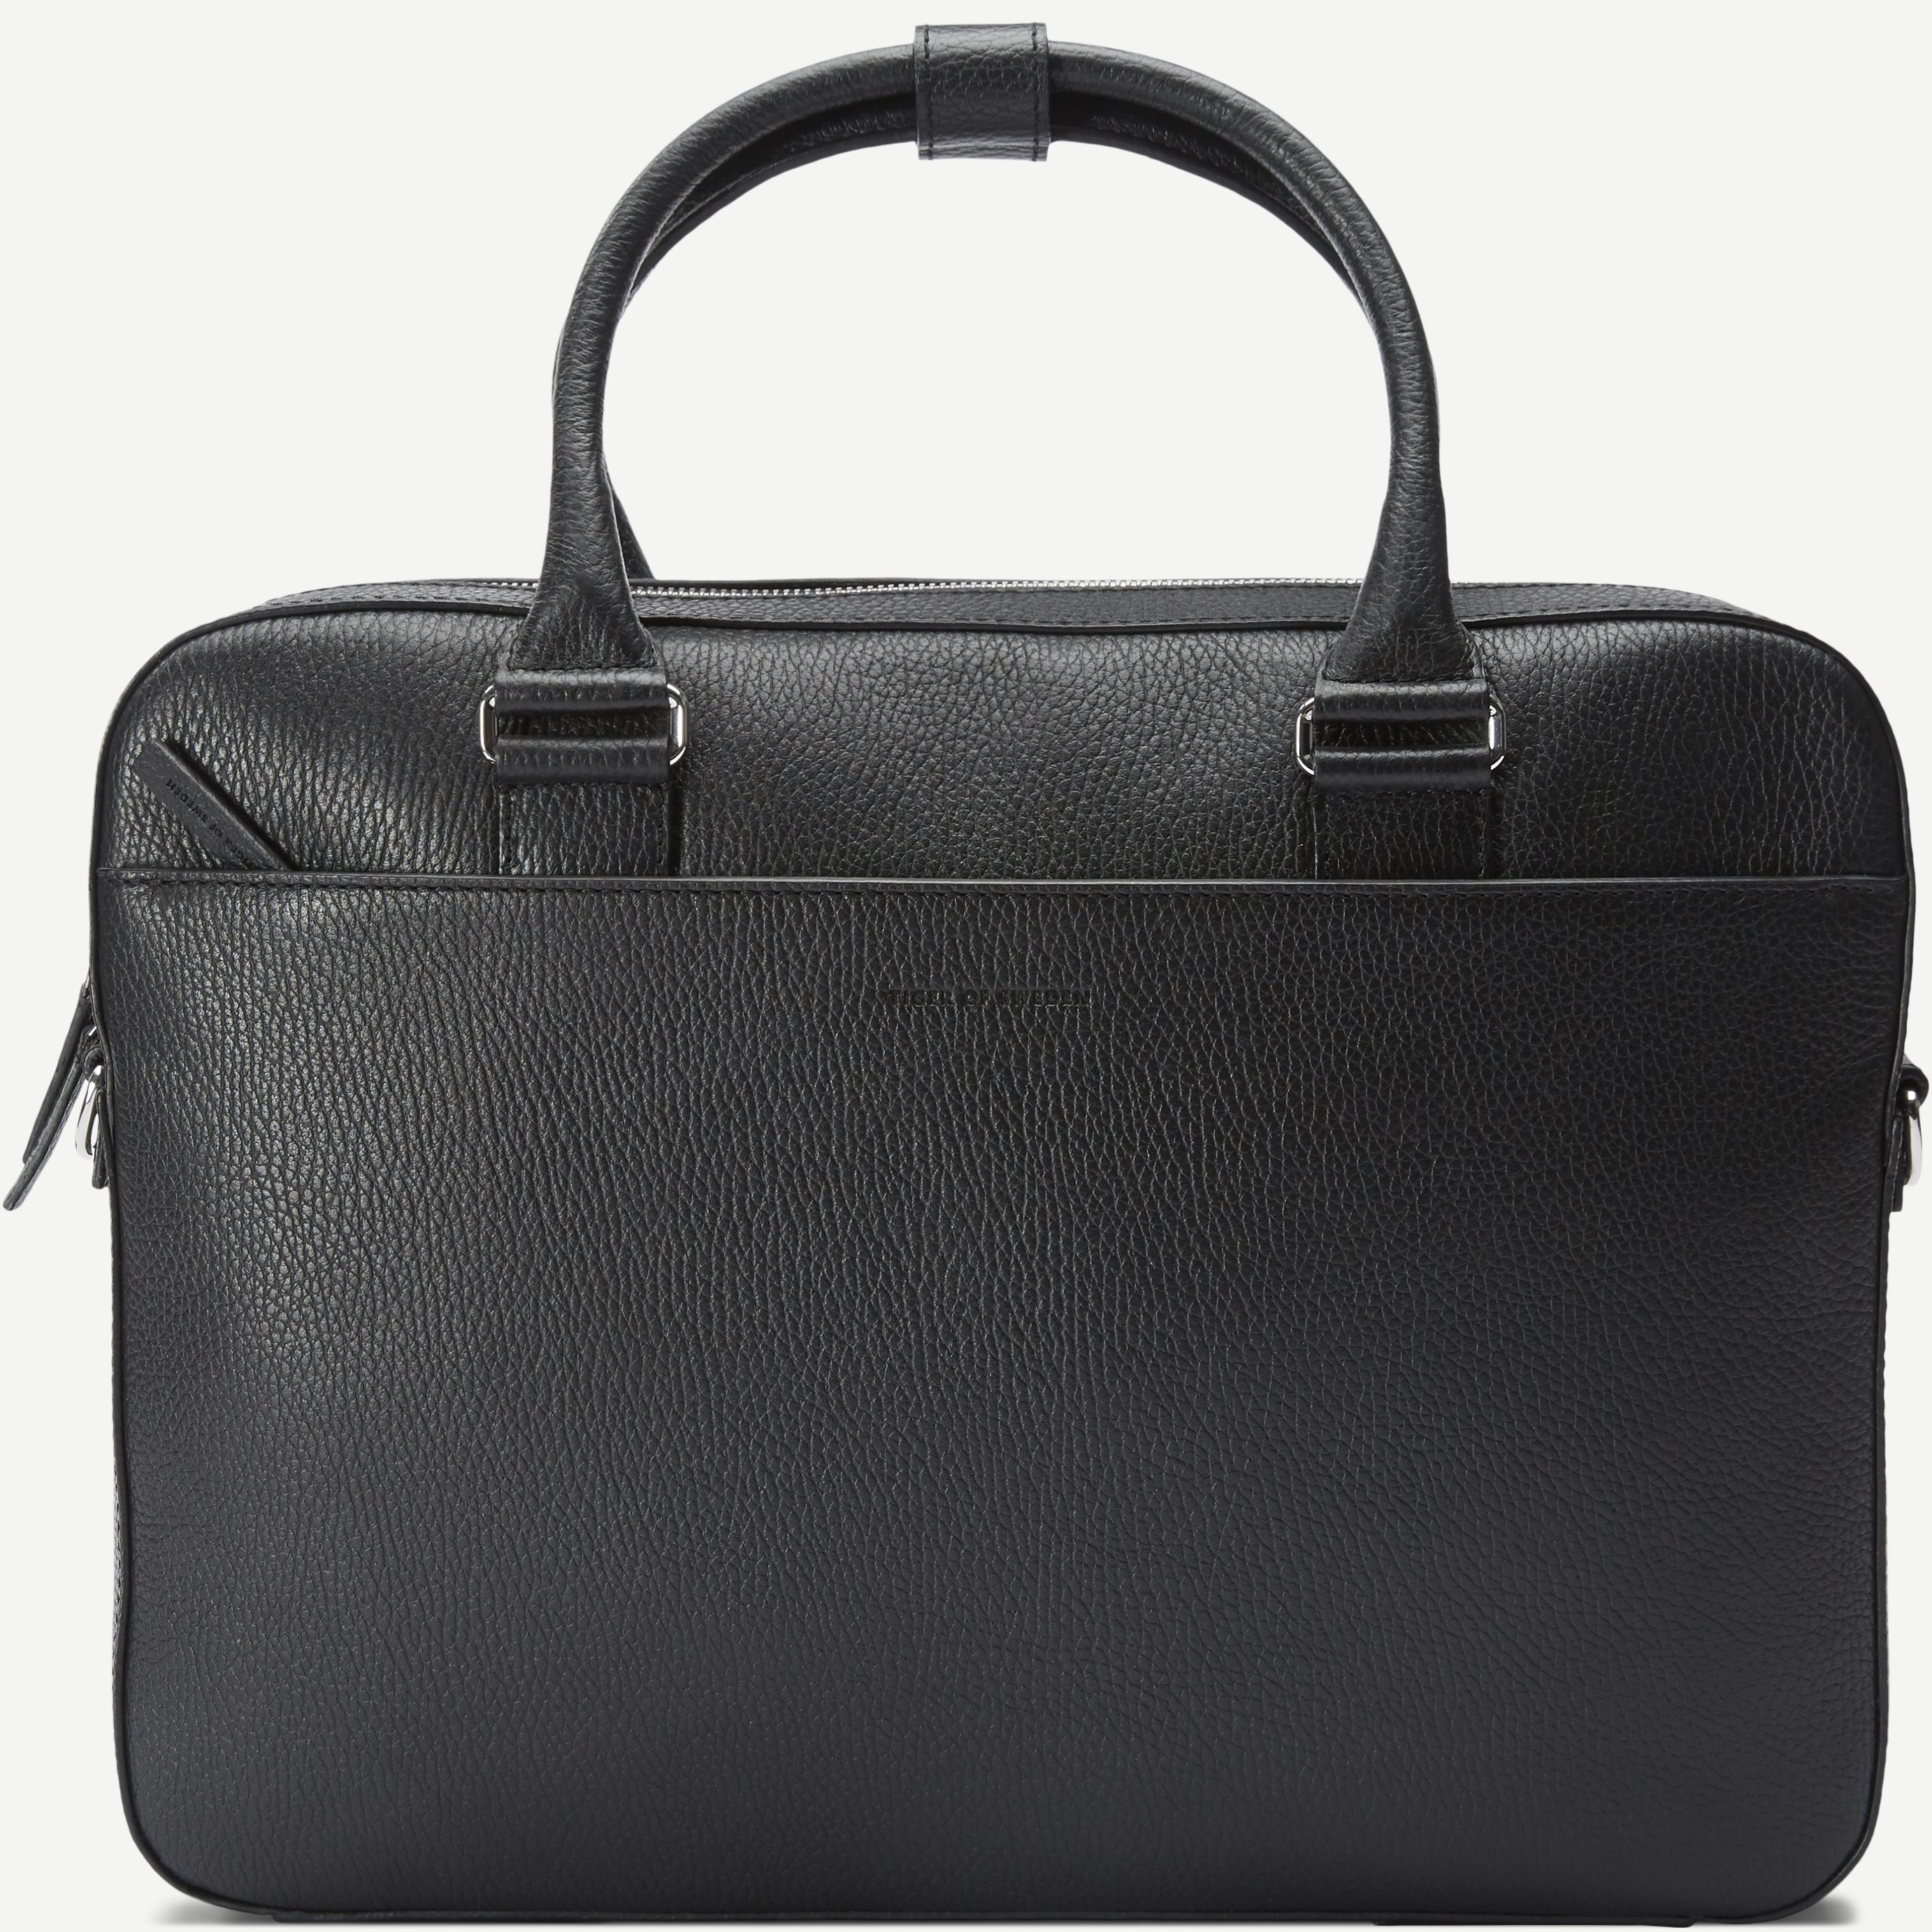 Bosun Business Bag - Bags - Black